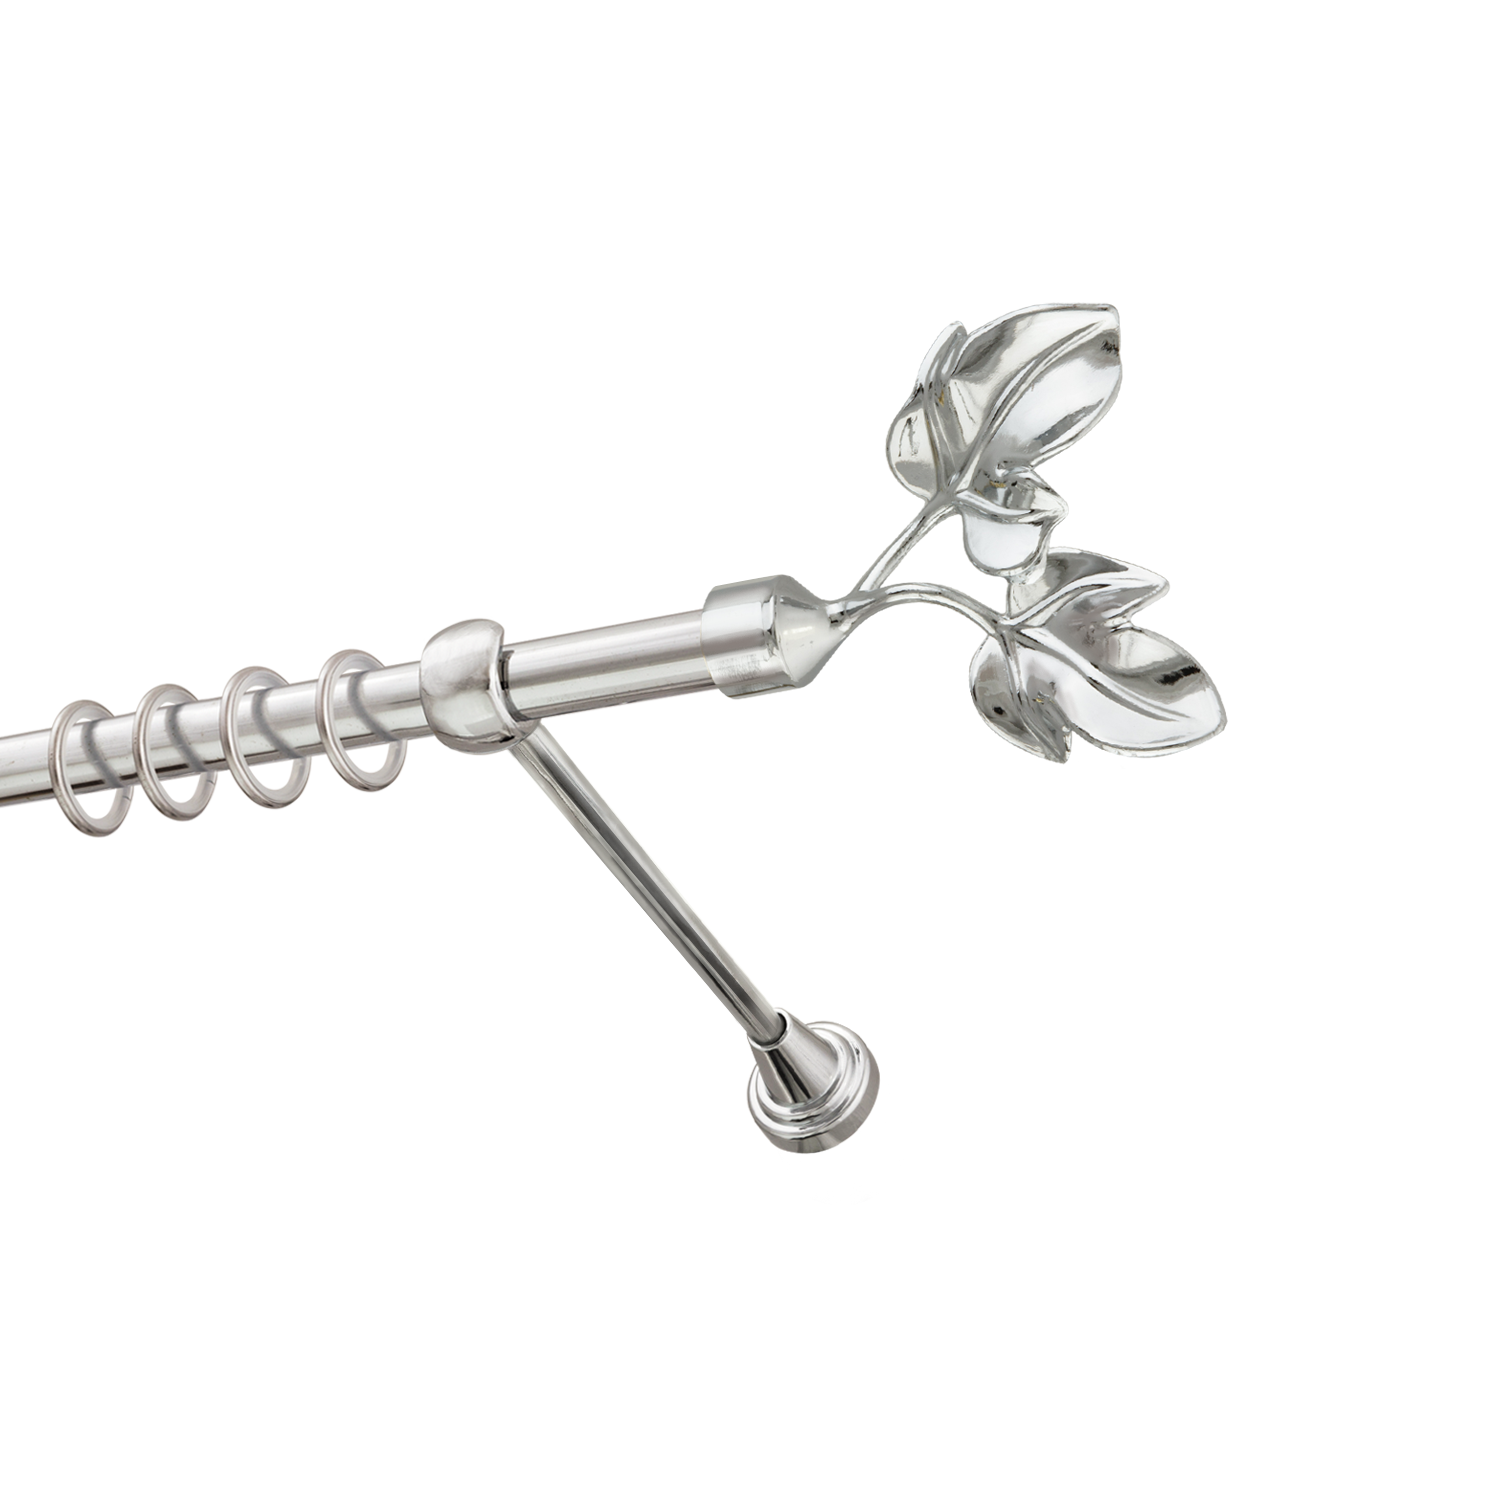 Металлический карниз для штор Листья, однорядный 16 мм, серебро, гладкая штанга, длина 180 см - фото Wikidecor.ru